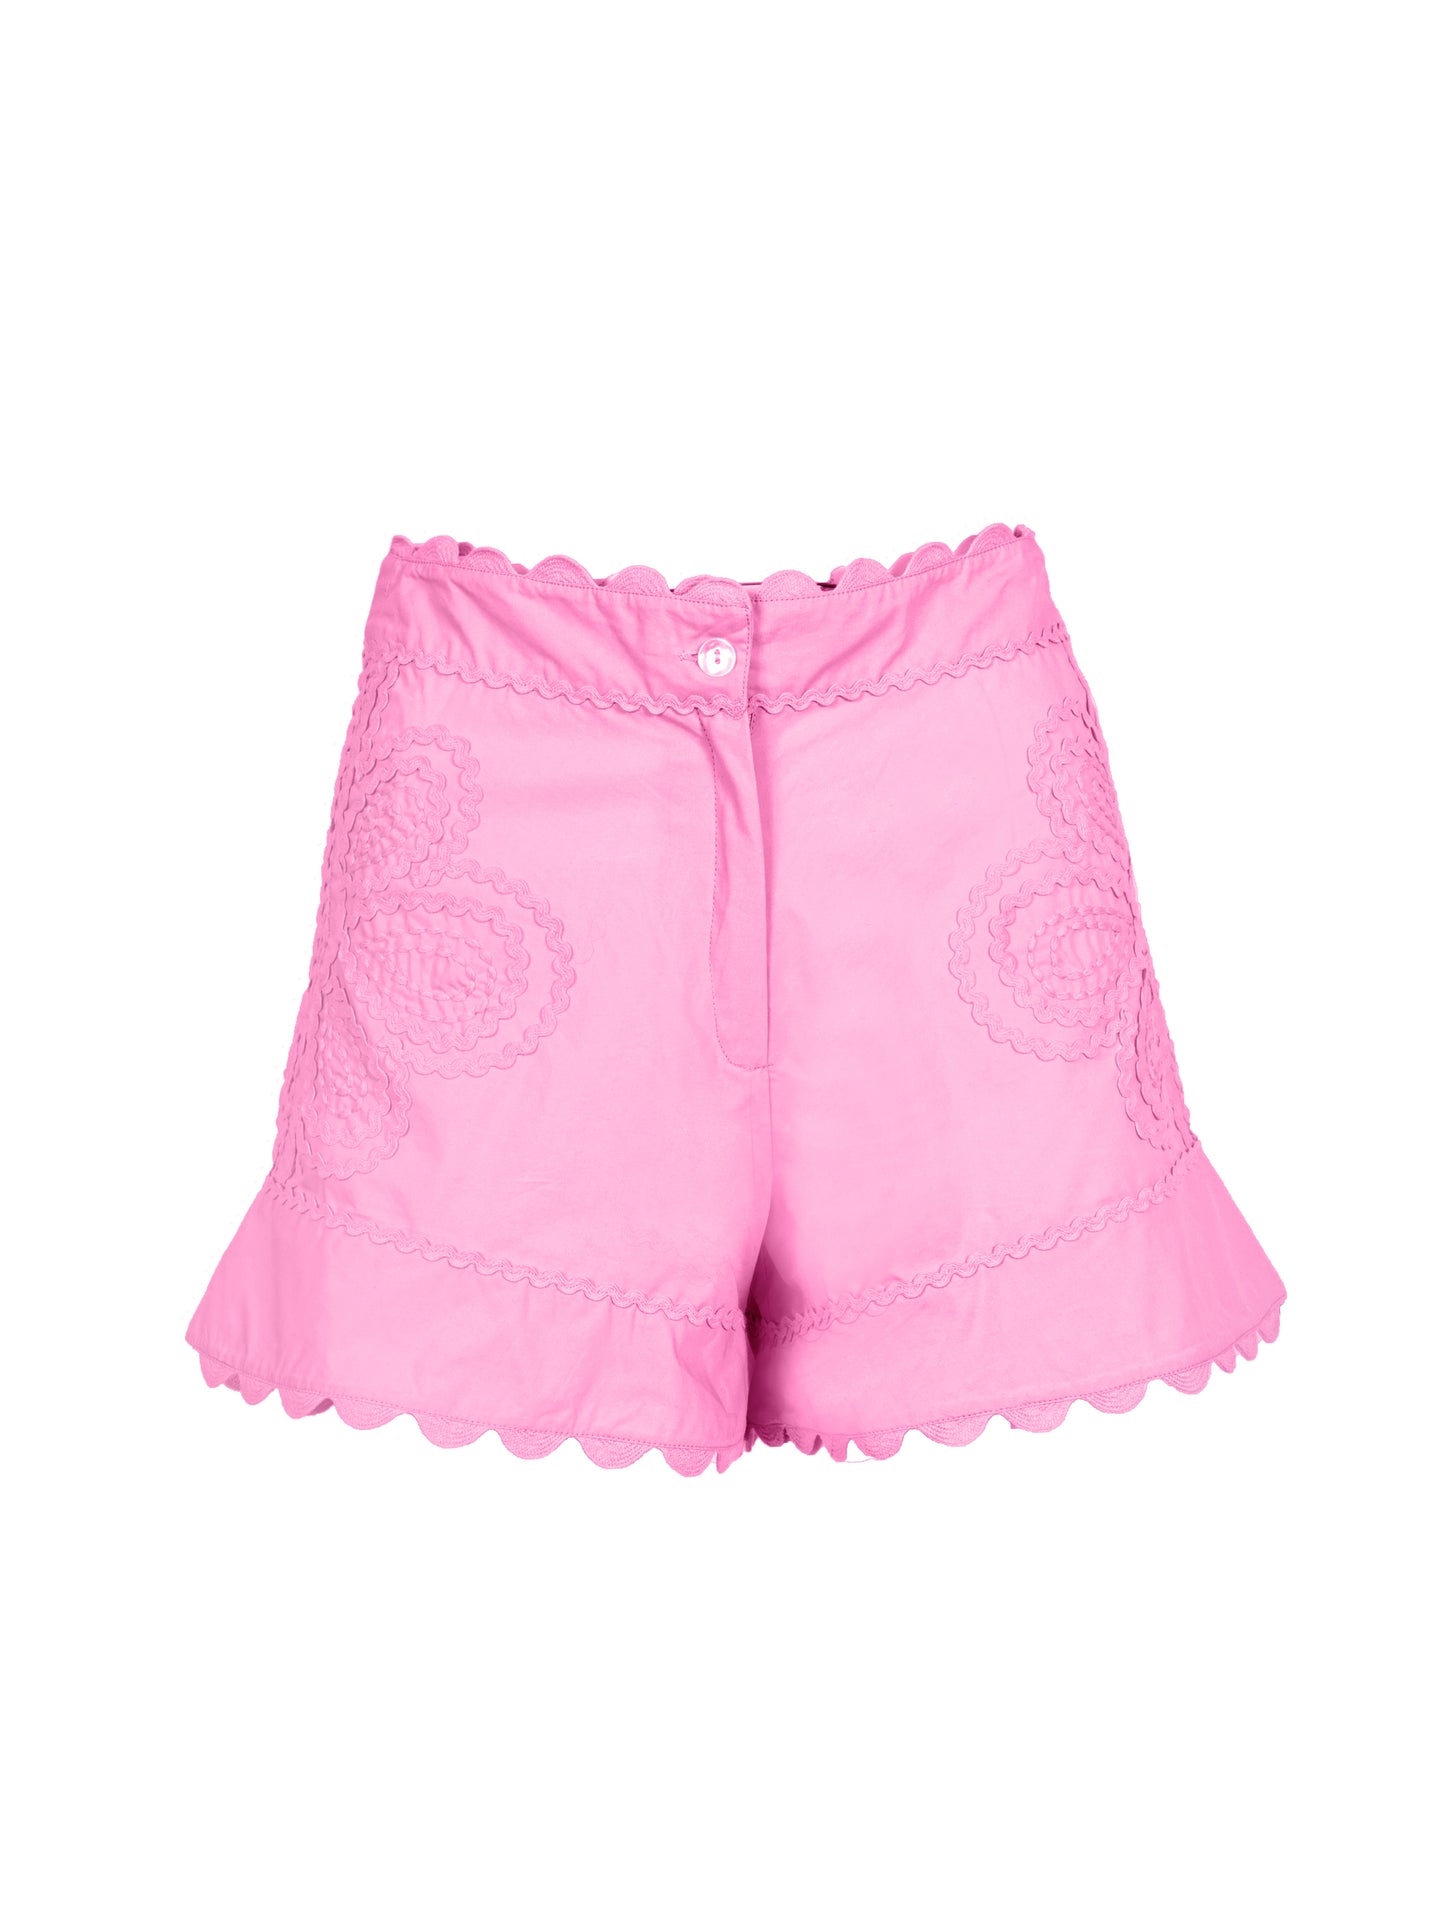 Juliet Dunn Shorts in neon pink